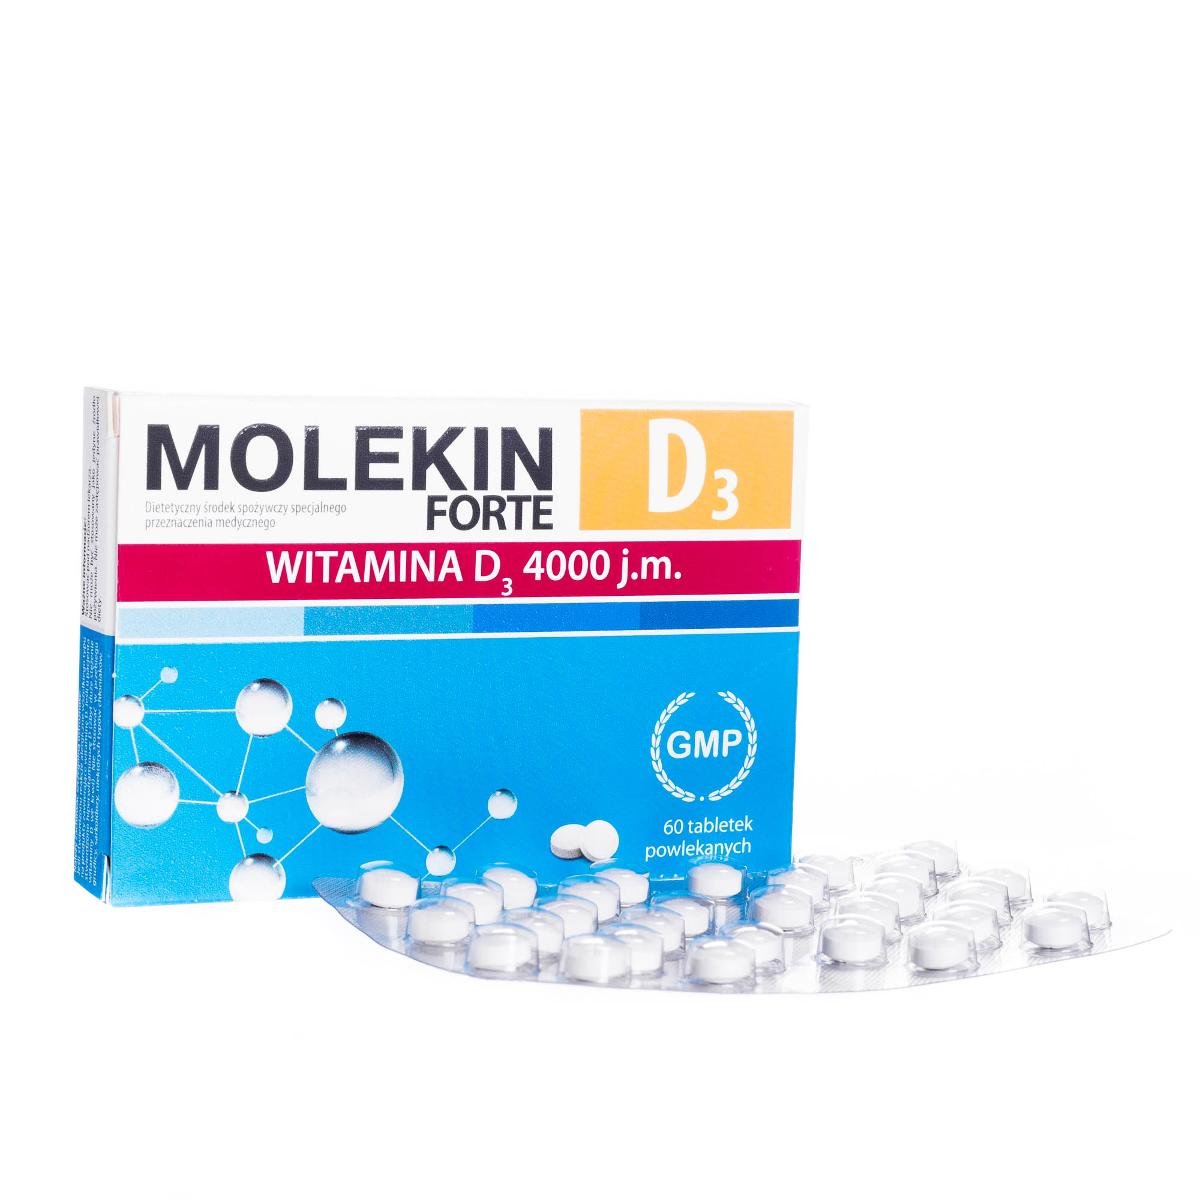 Фото - Вітаміни й мінерали Forte Suplement diety, Molekin D3  - środek specjalnego przeznaczenia medyc 